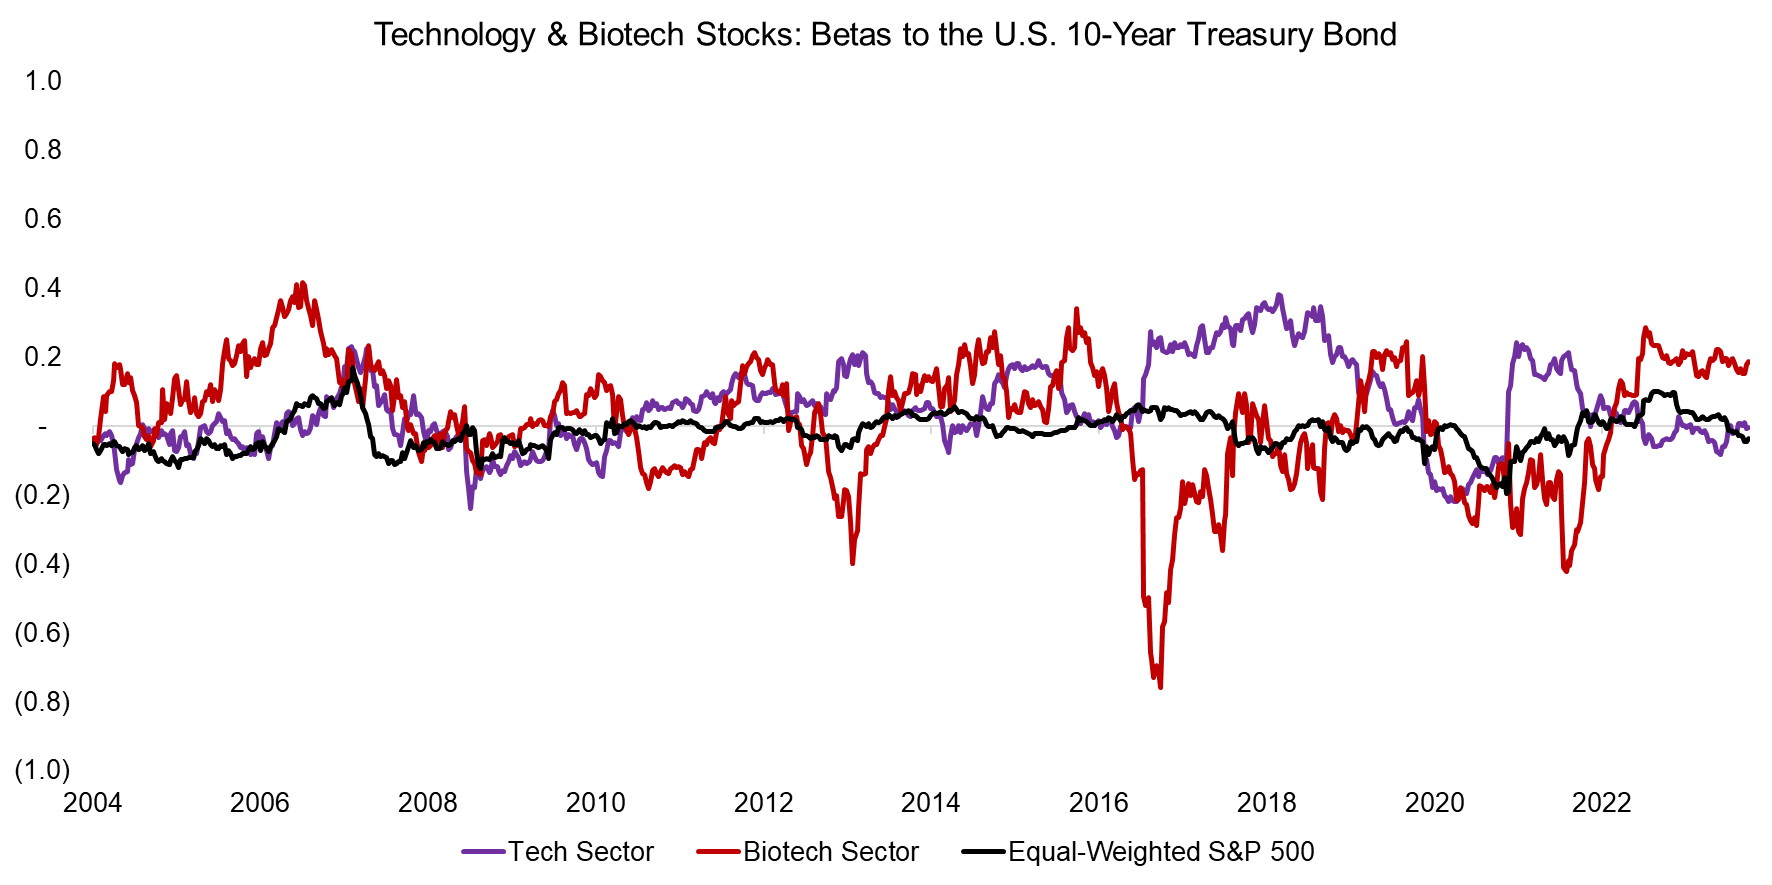 Technology & Biotech Stocks Betas to the U.S. 10-Year Treasury Bond